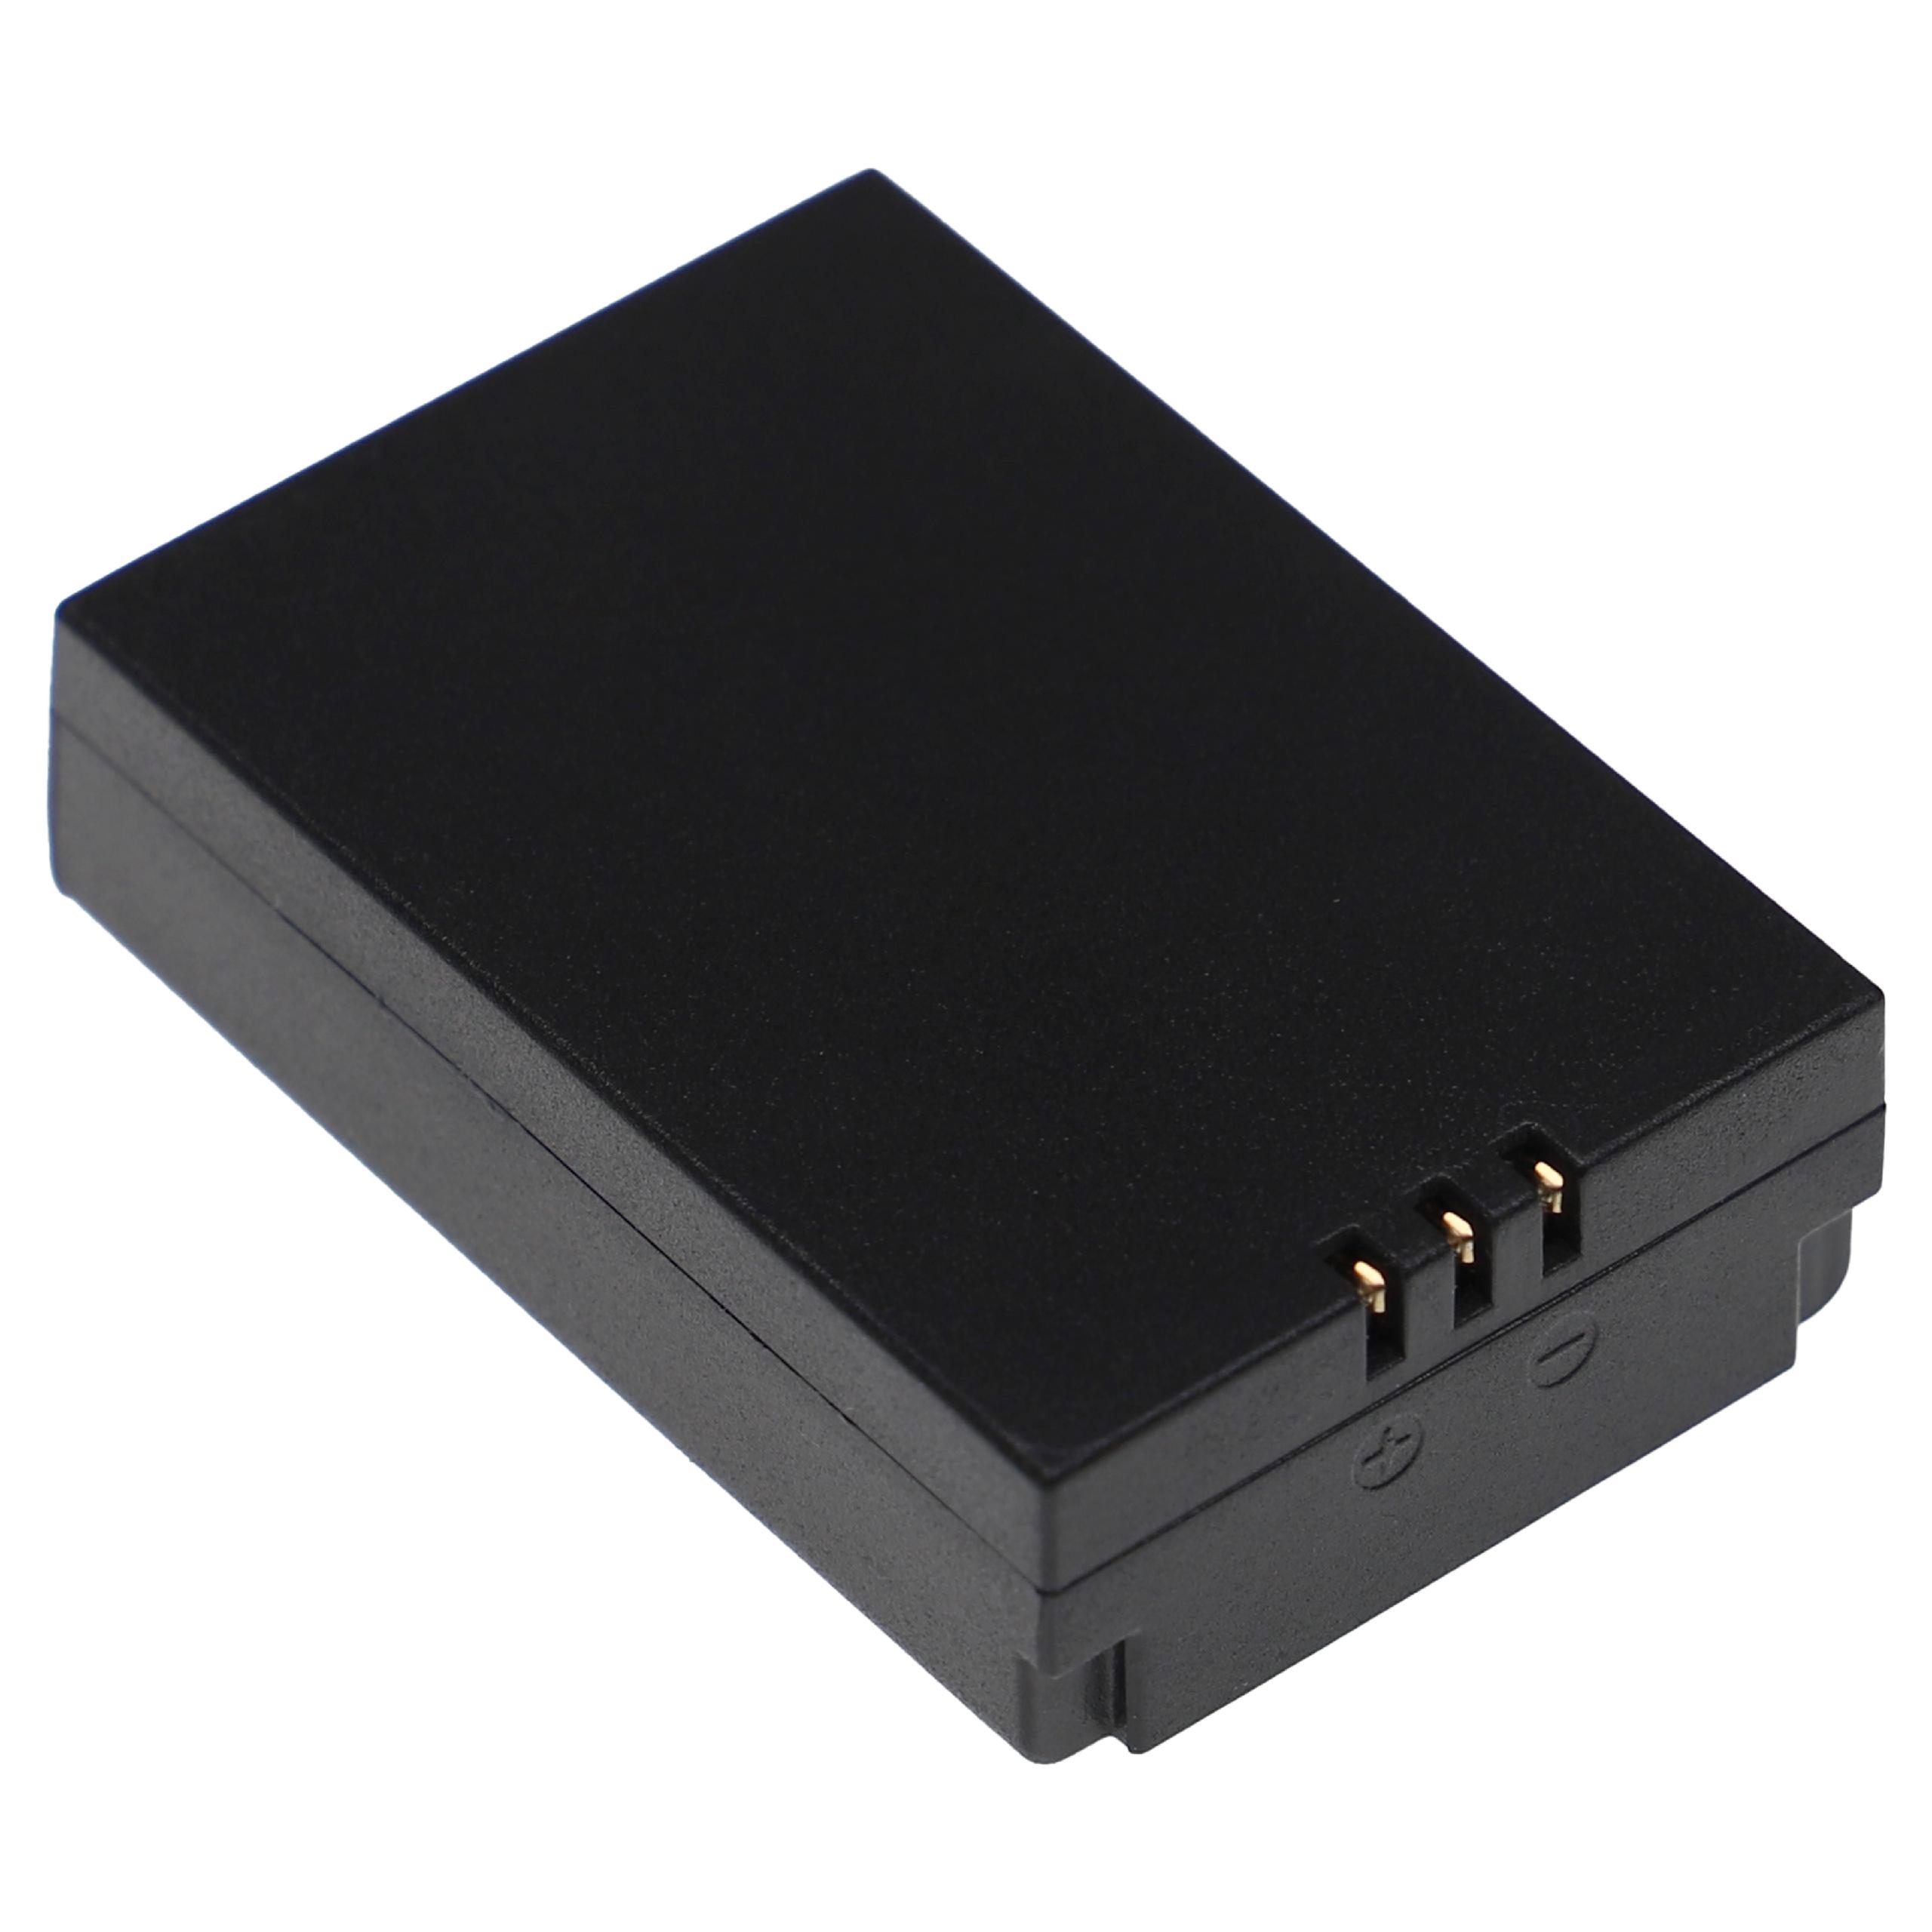 Akumulator do przyrządu pomiarowego zamiennik CEM PT603450-2S - 1200 mAh 7,4 V Li-Ion